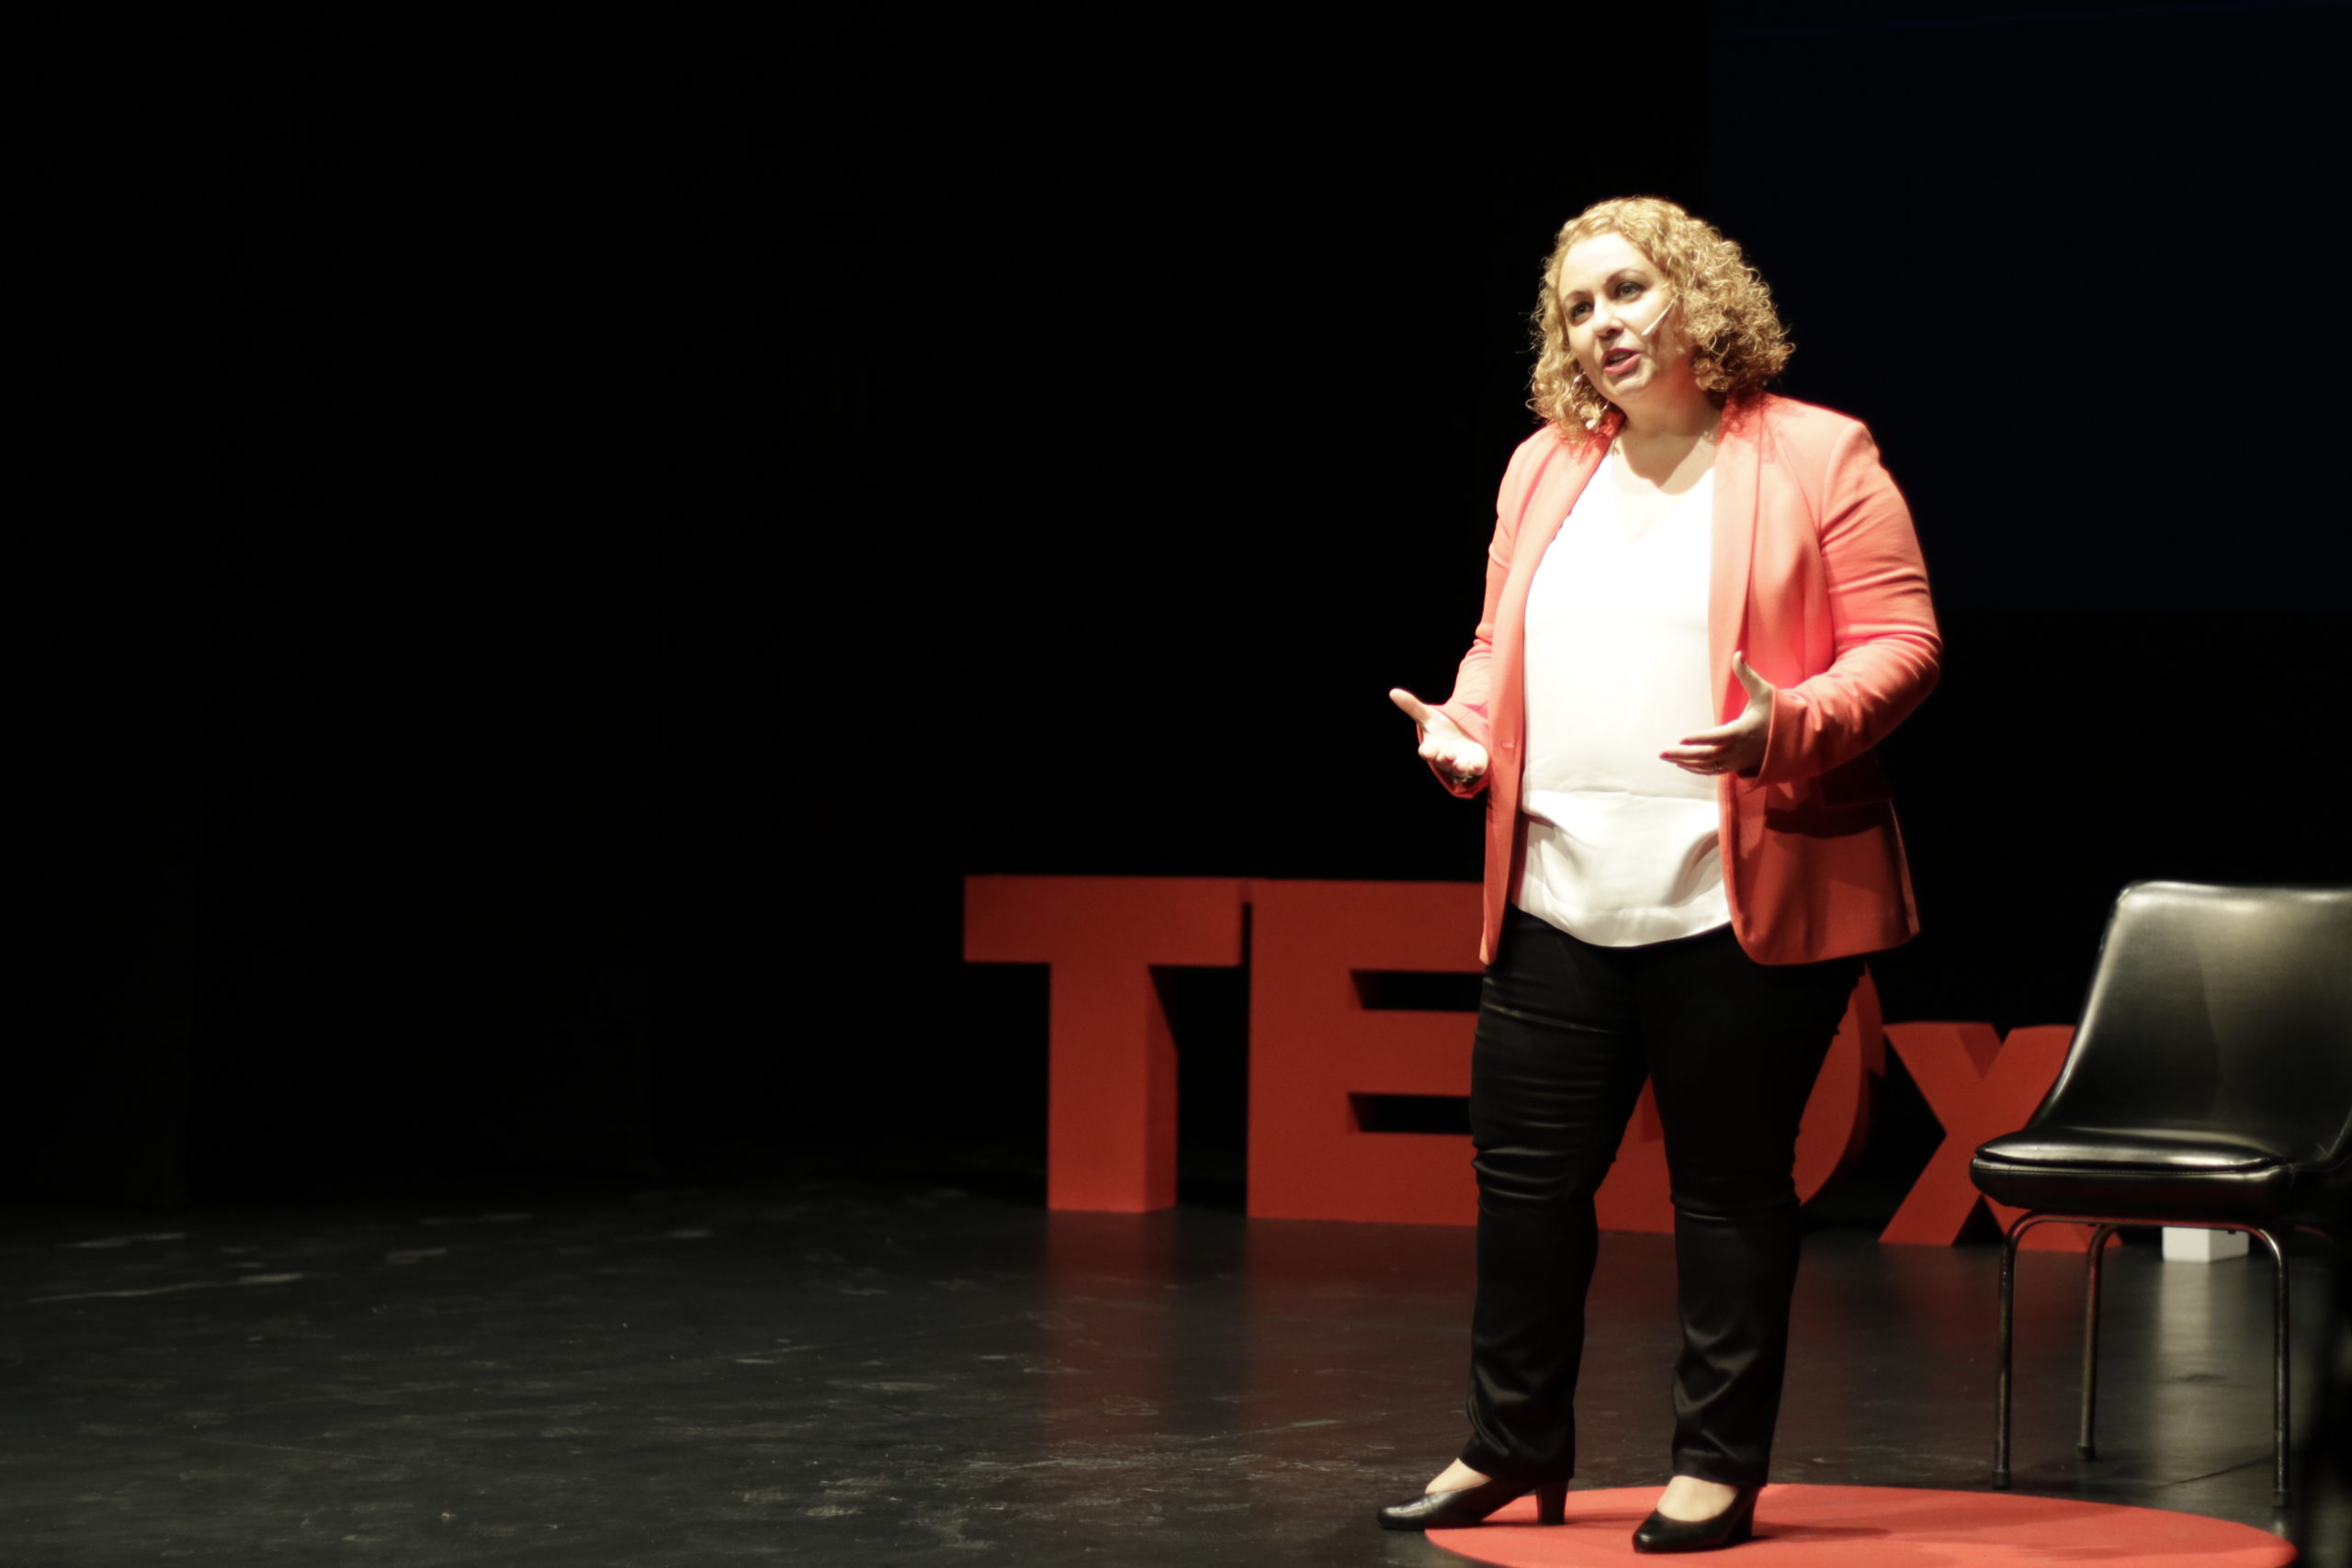 Charla TEDx Sonia El Hakim que no te quiten el sitio